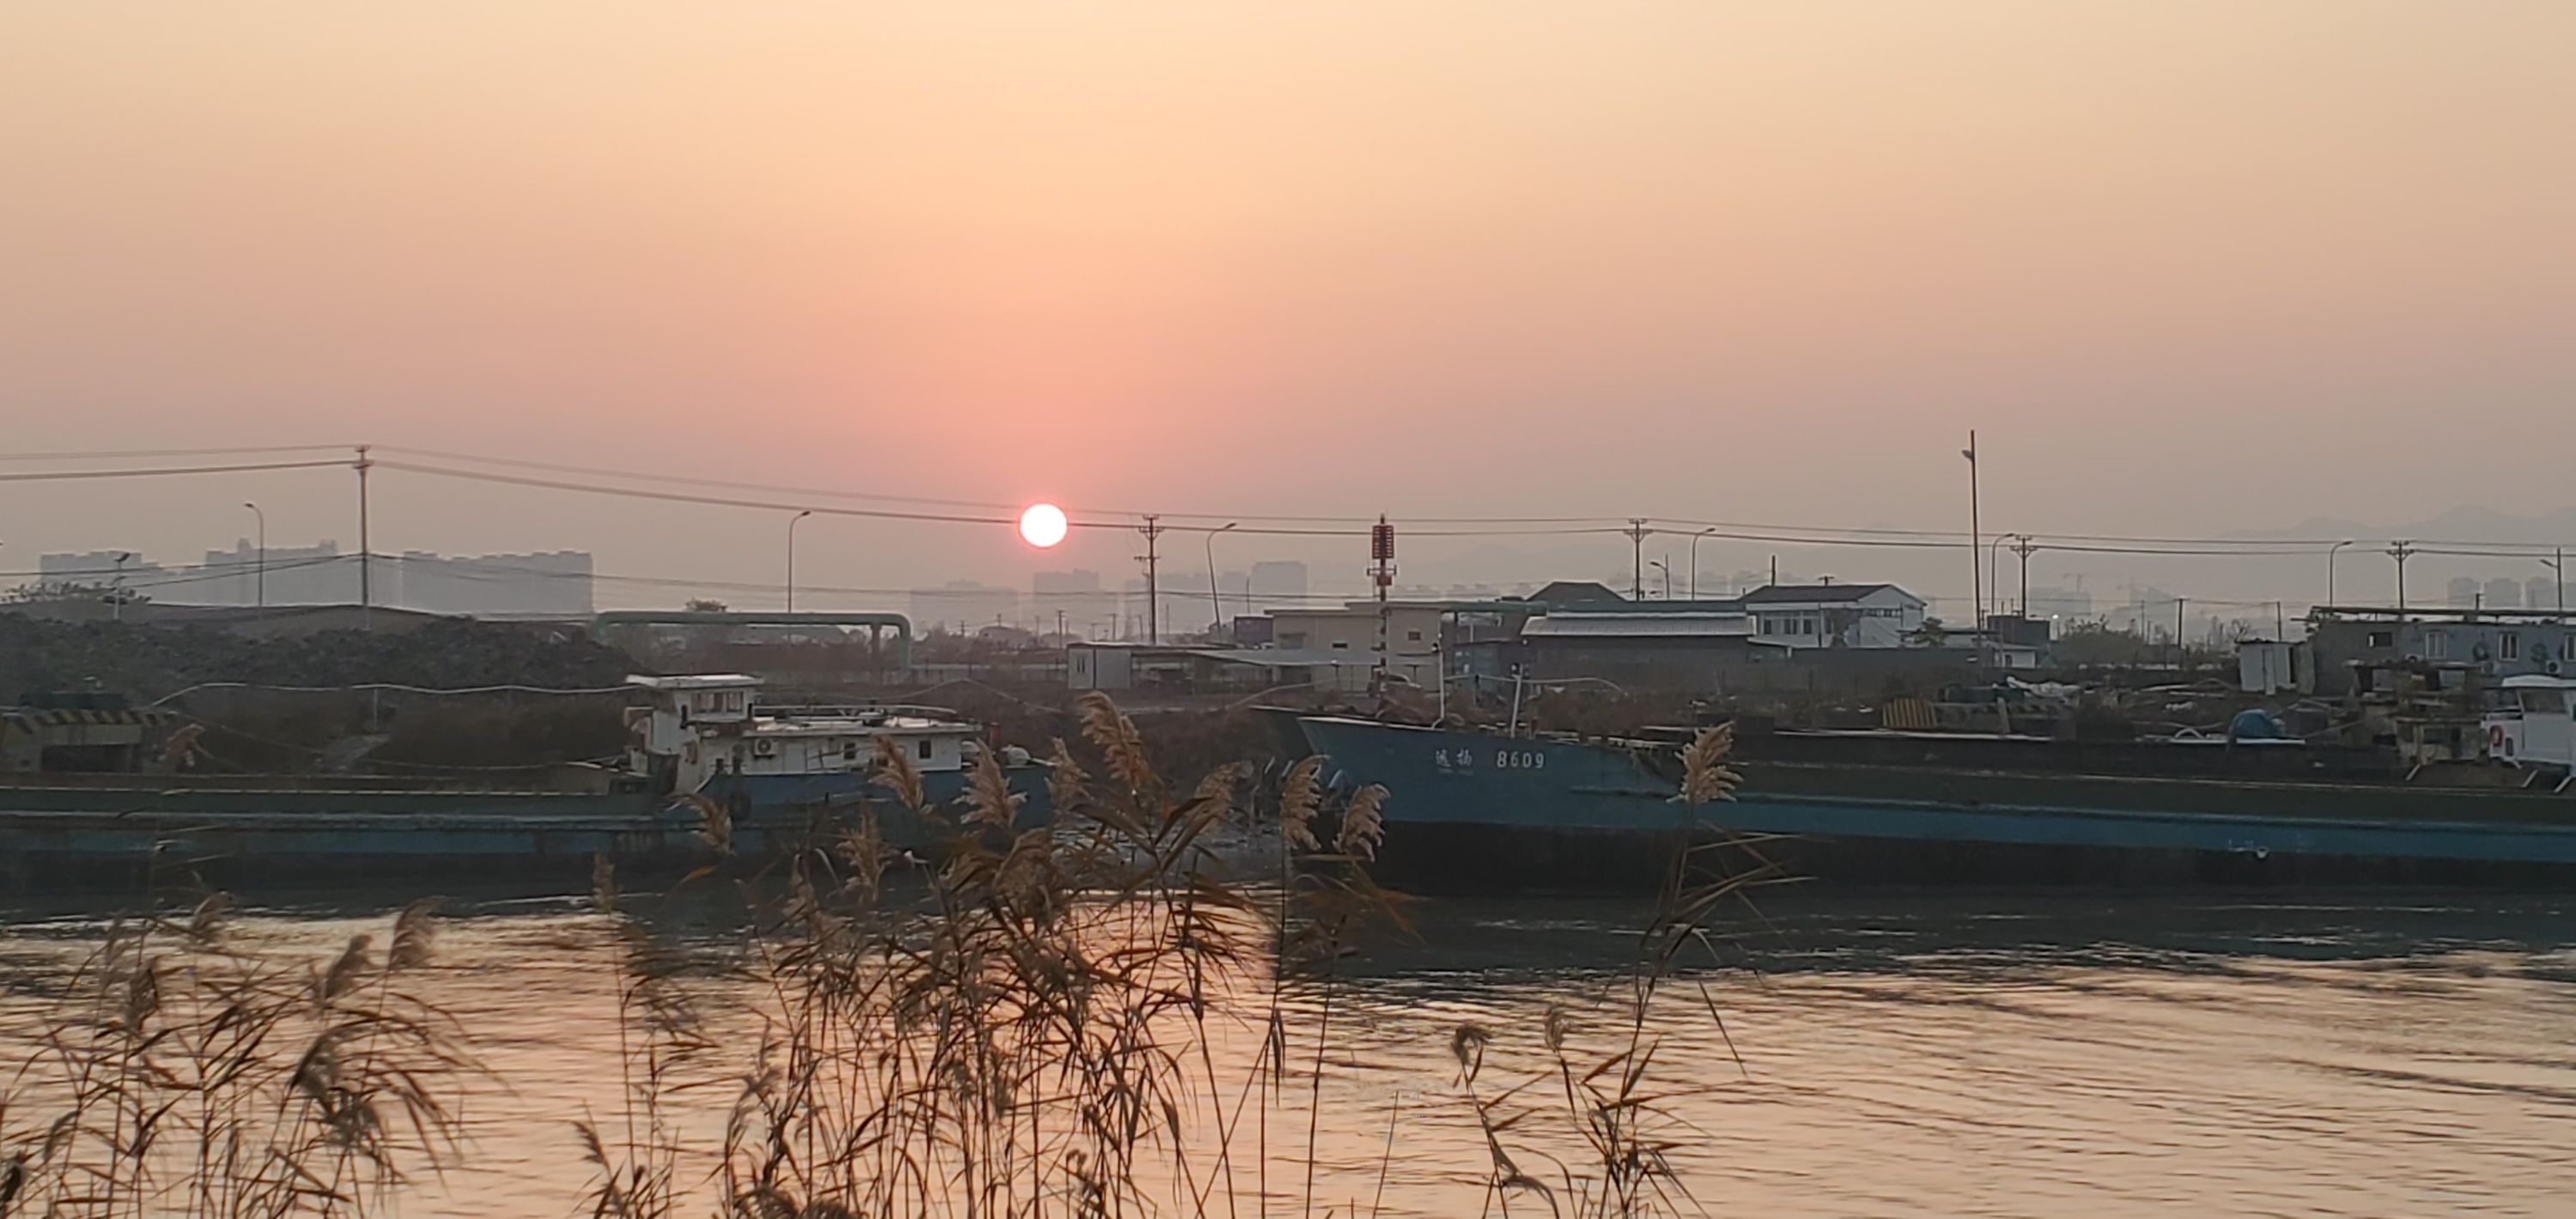 Sunrise during 9k run - Ningbo